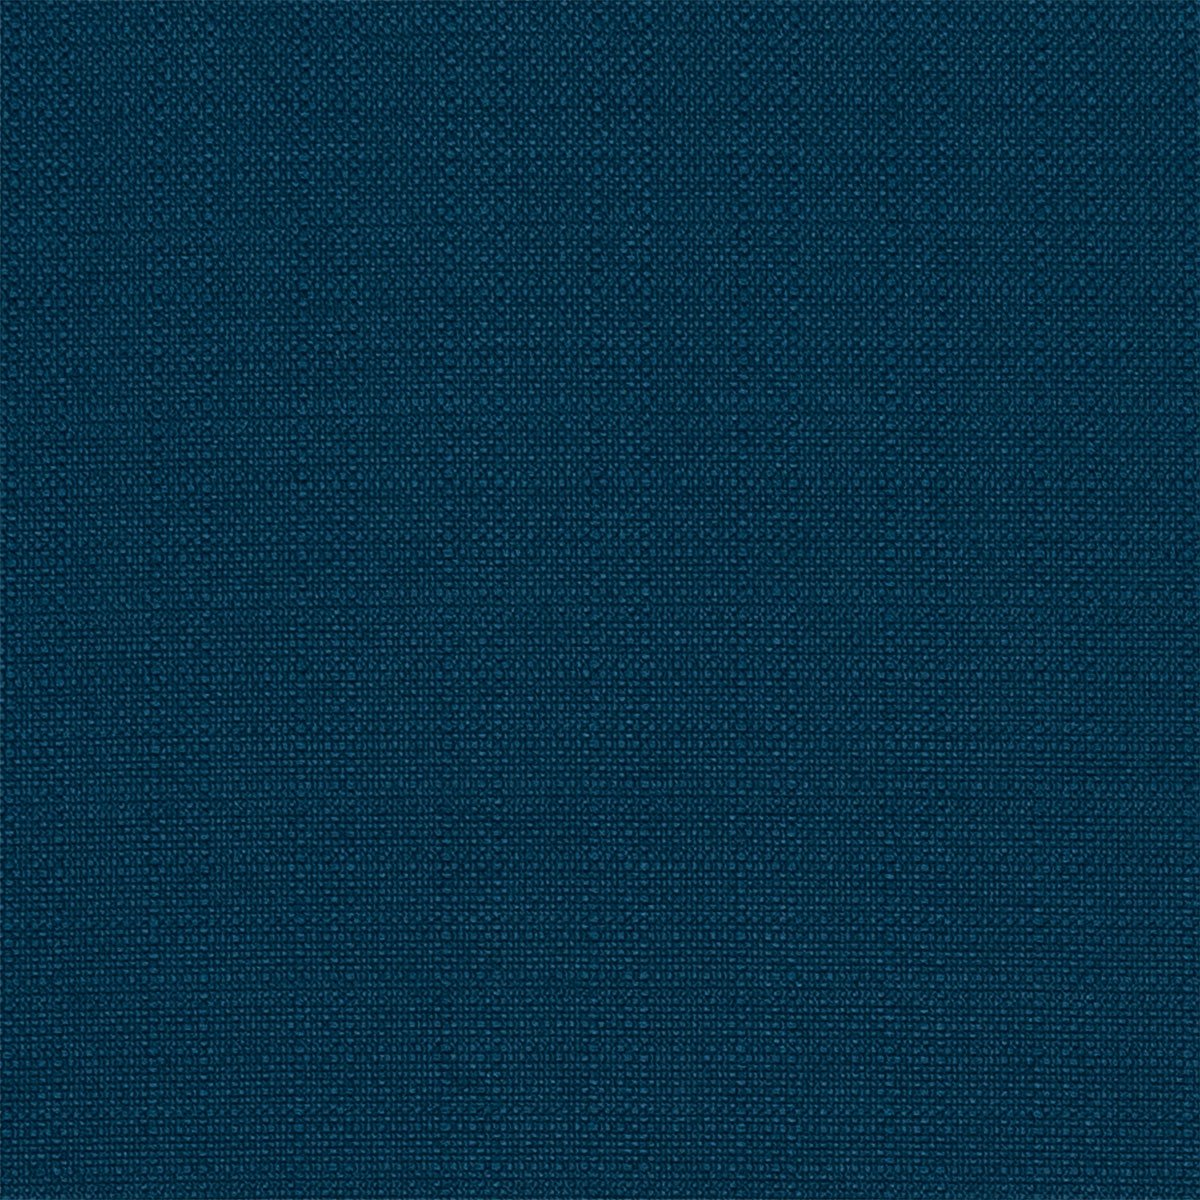 14 Oz Navy Blue Washed Upholstery Denim Fabric